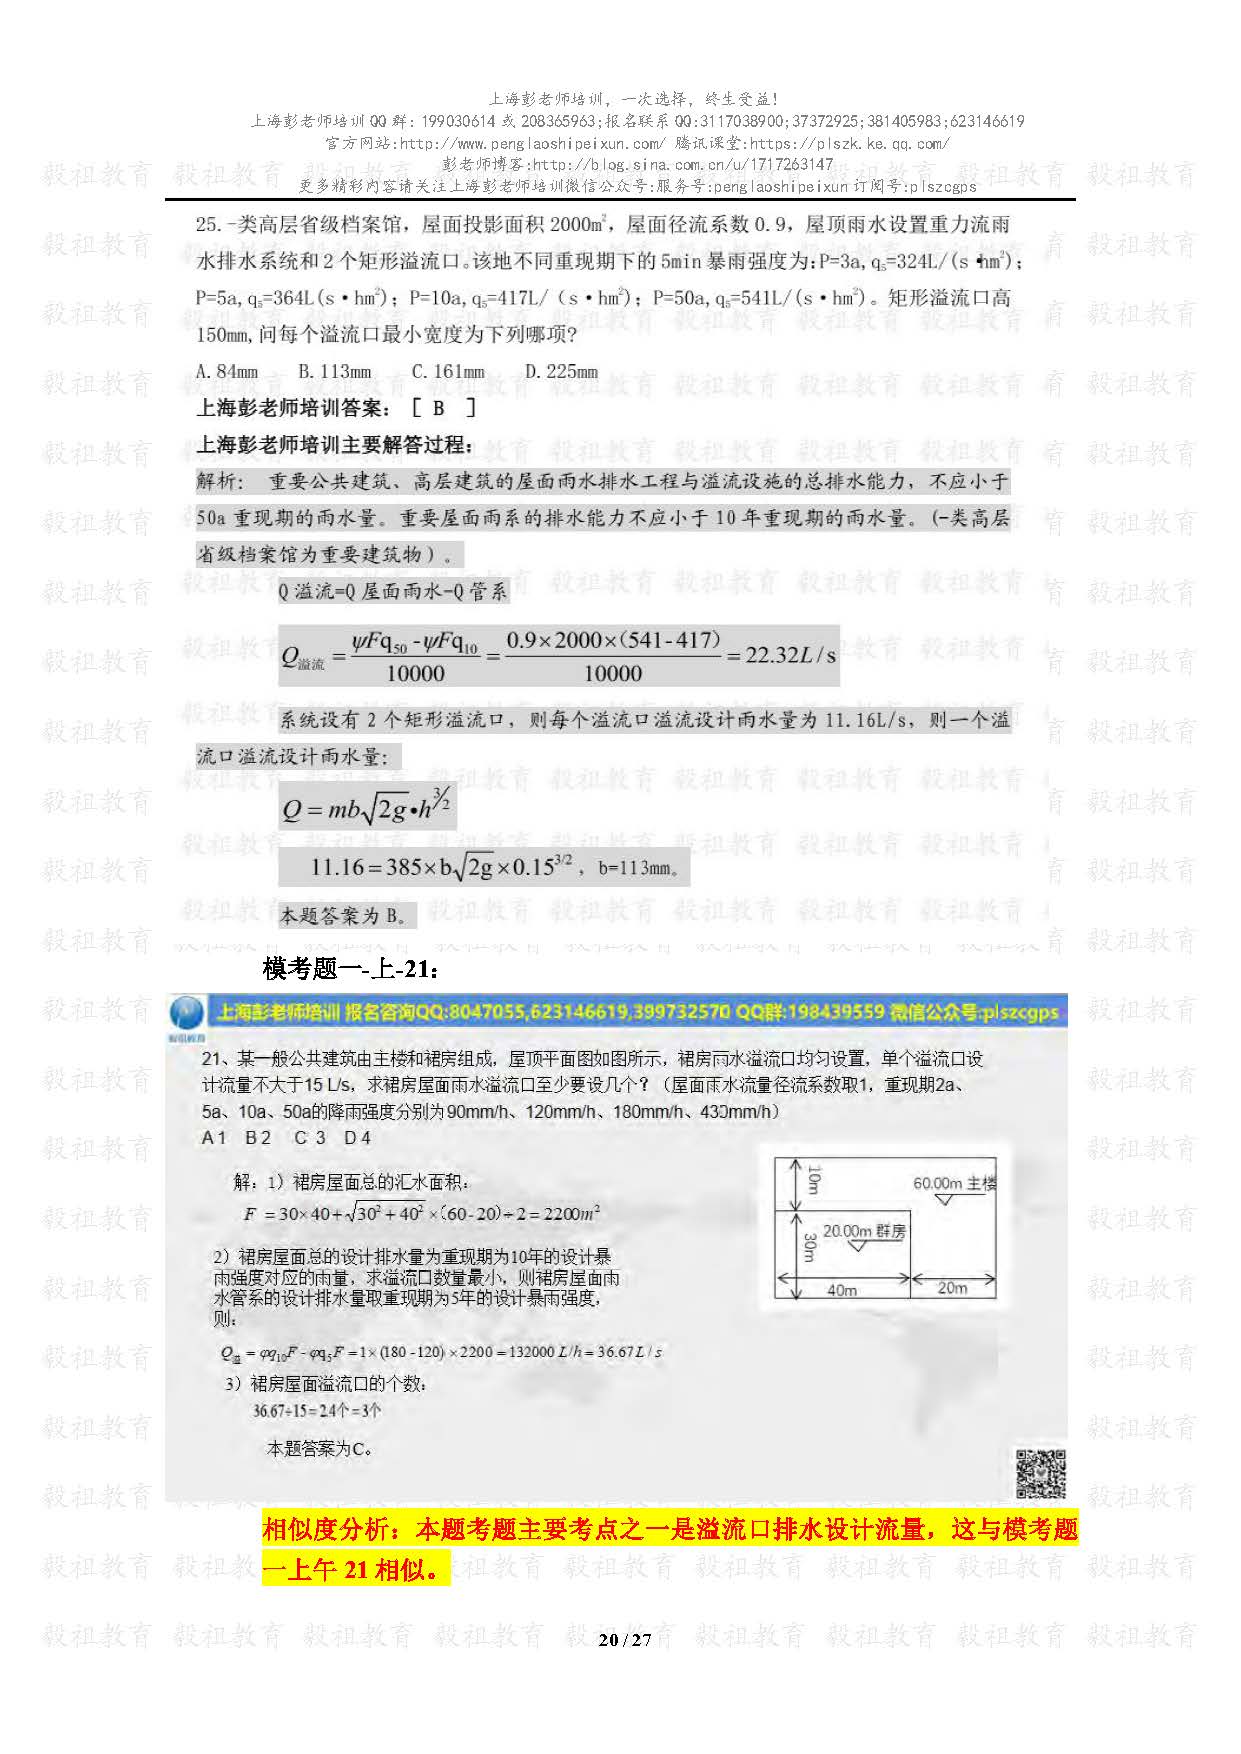 2020注册给排水考试真题与模考题相似度分析-上海彭老师培训_页面_20.jpg.jpg